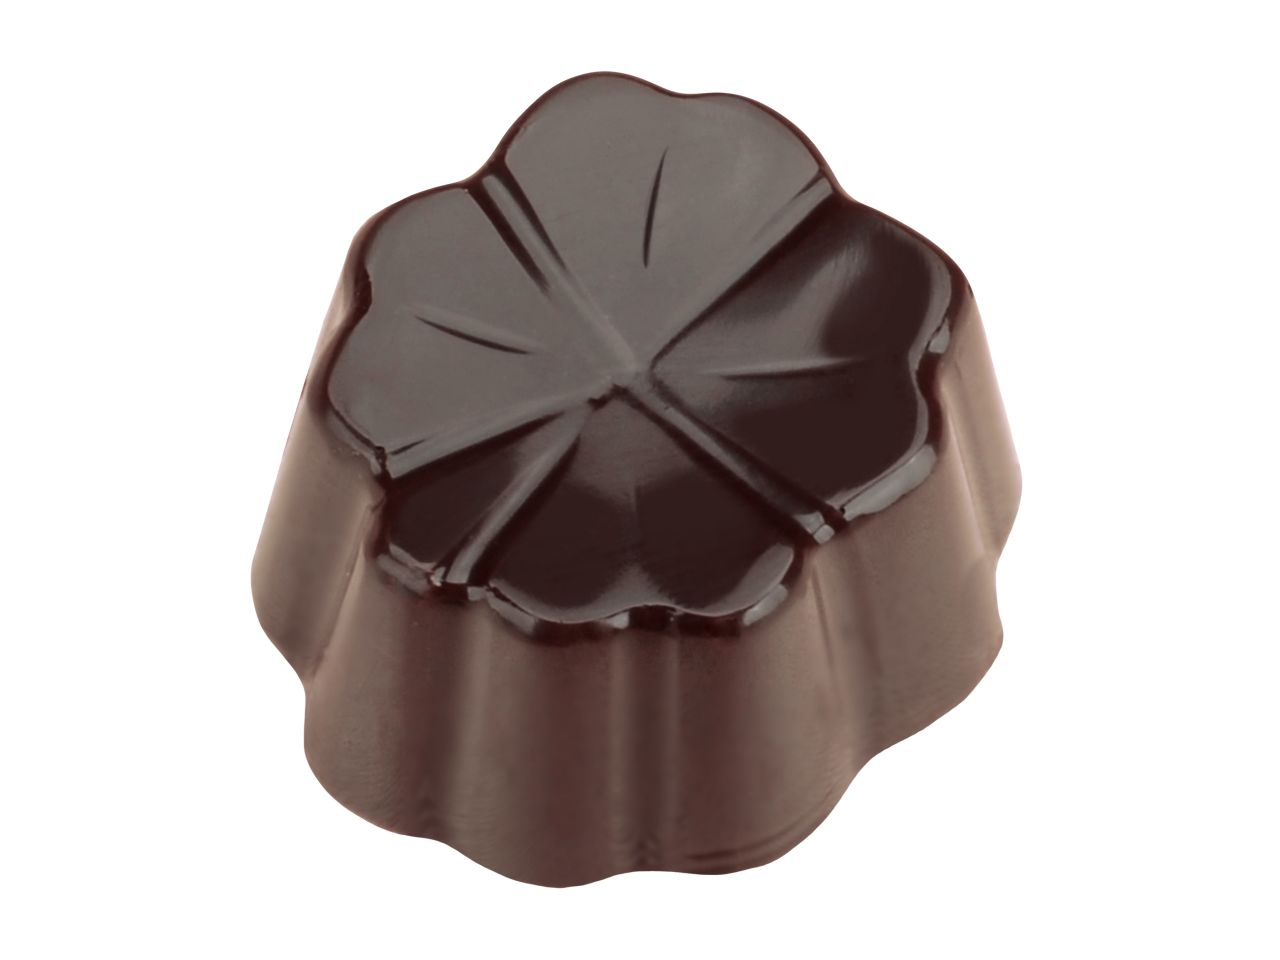 Schokoladenform Kleeblatt